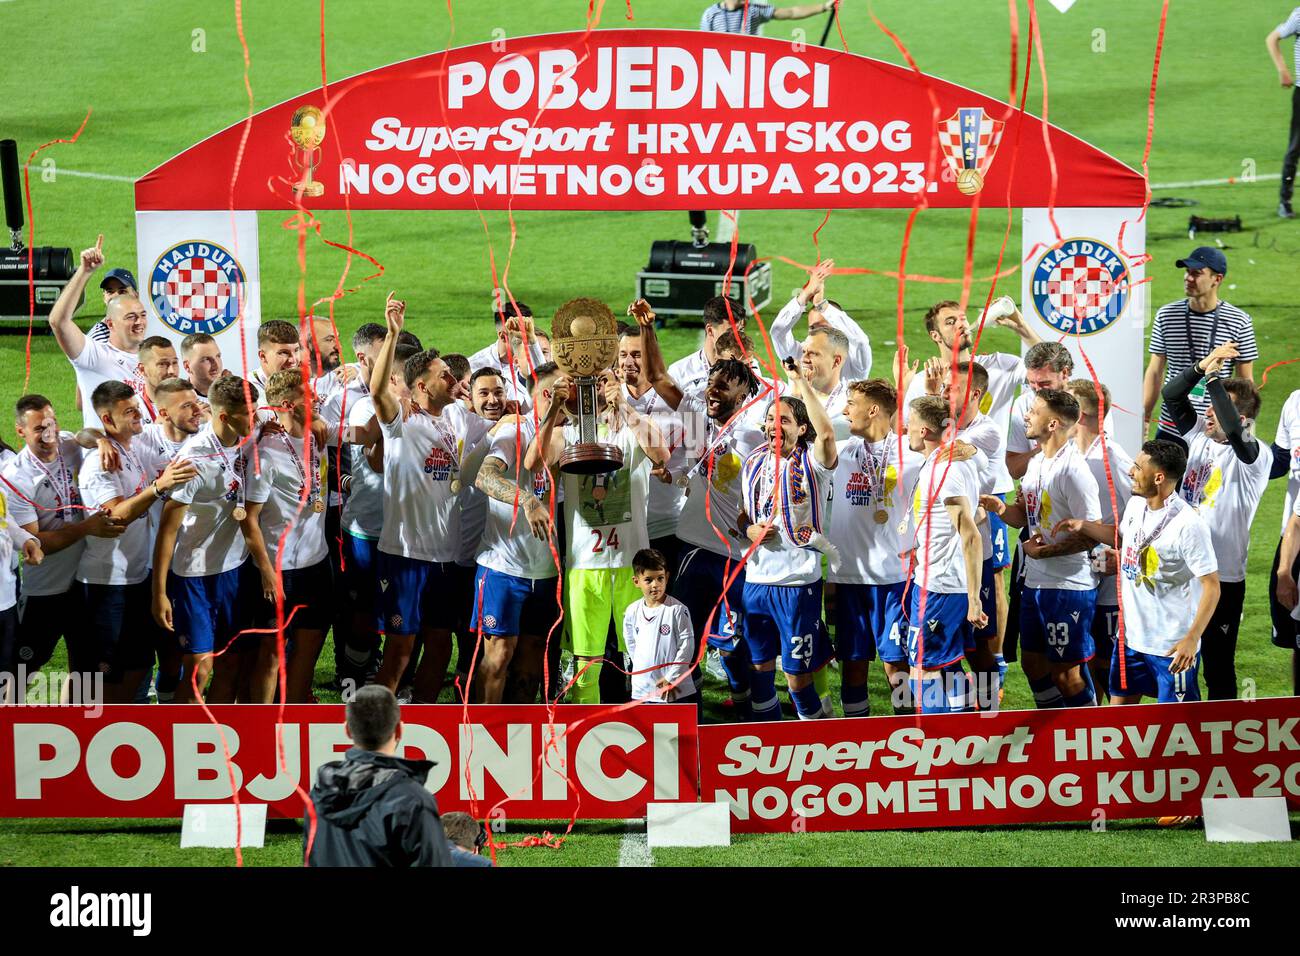 Football, Hajduk Split - HNK Rijeka